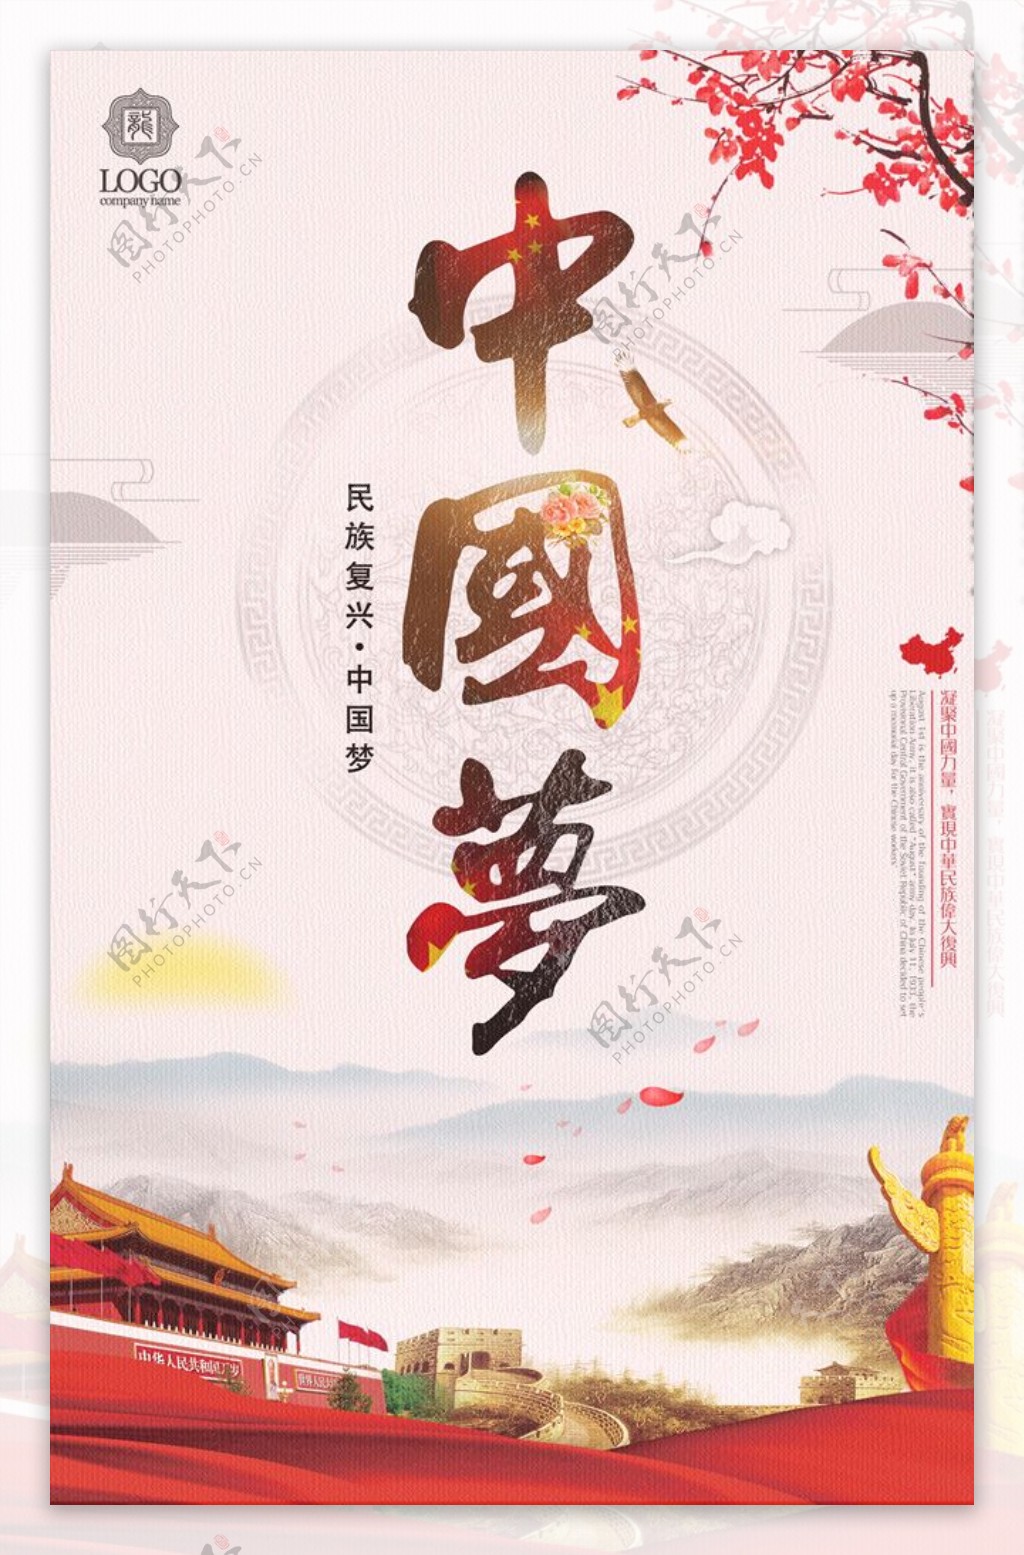 中国风创意中国梦党建展板海报